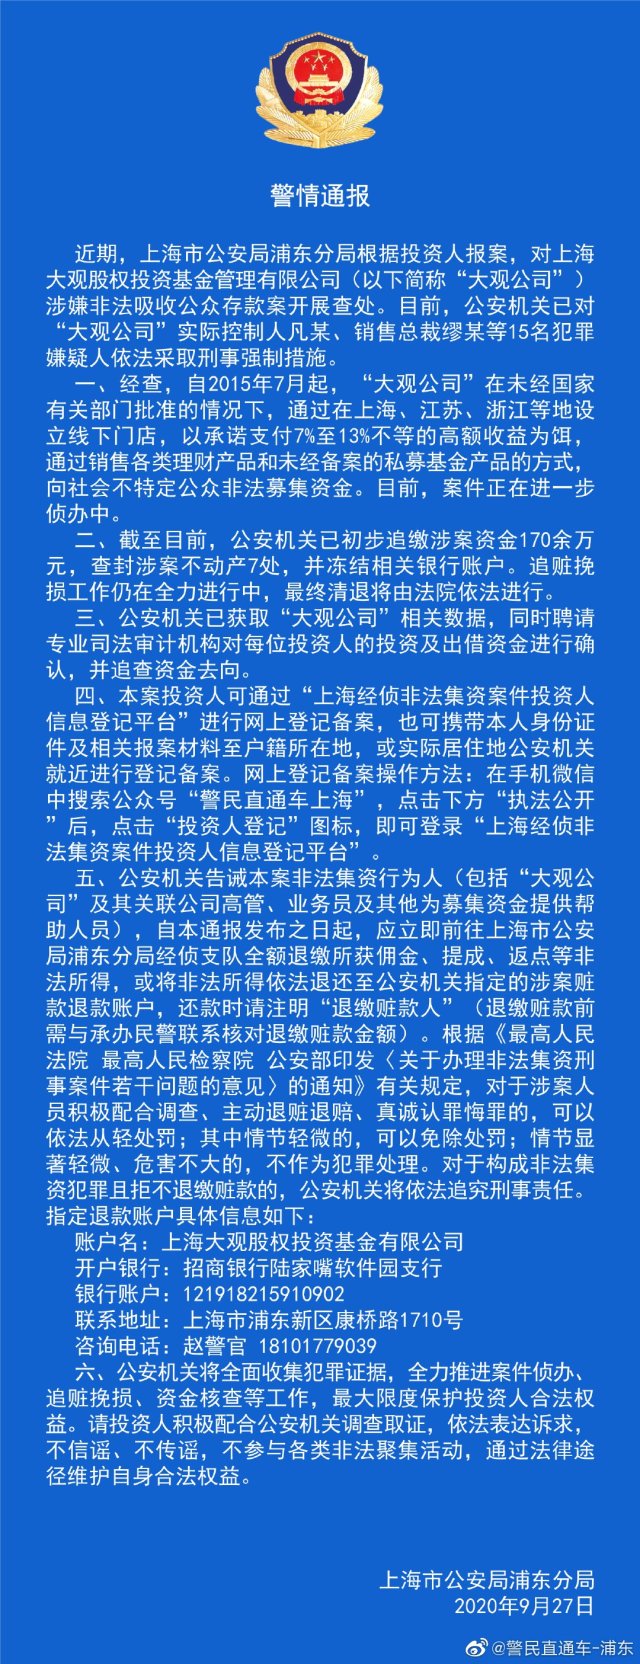 上海一平台涉嫌非吸被立案 实控人等15人被抓